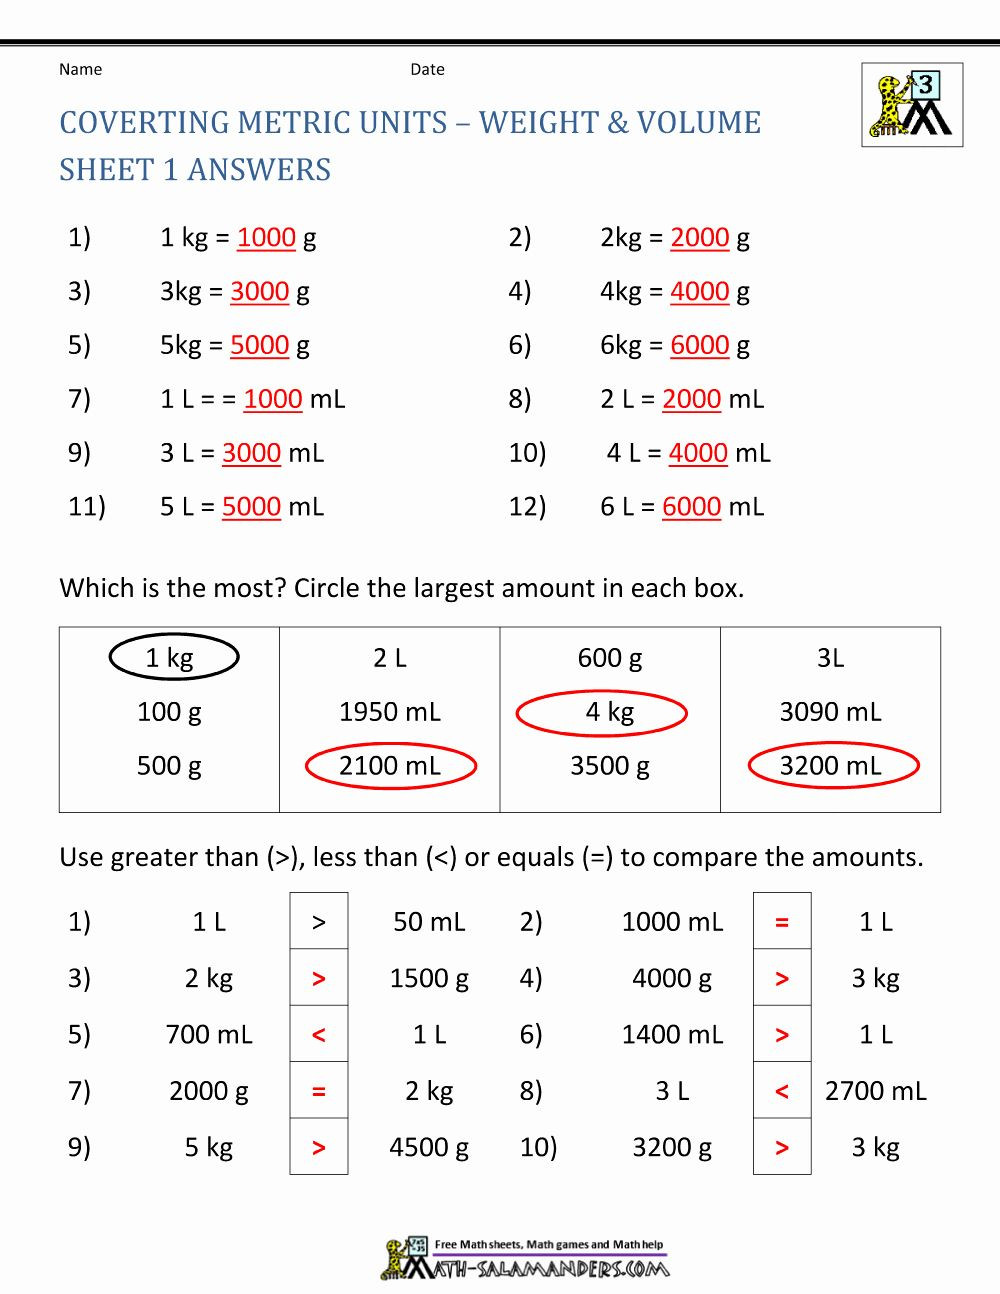 Measuring Units Worksheet Answer Key Measuring Units Worksheet Answer Key Unique Printable Math